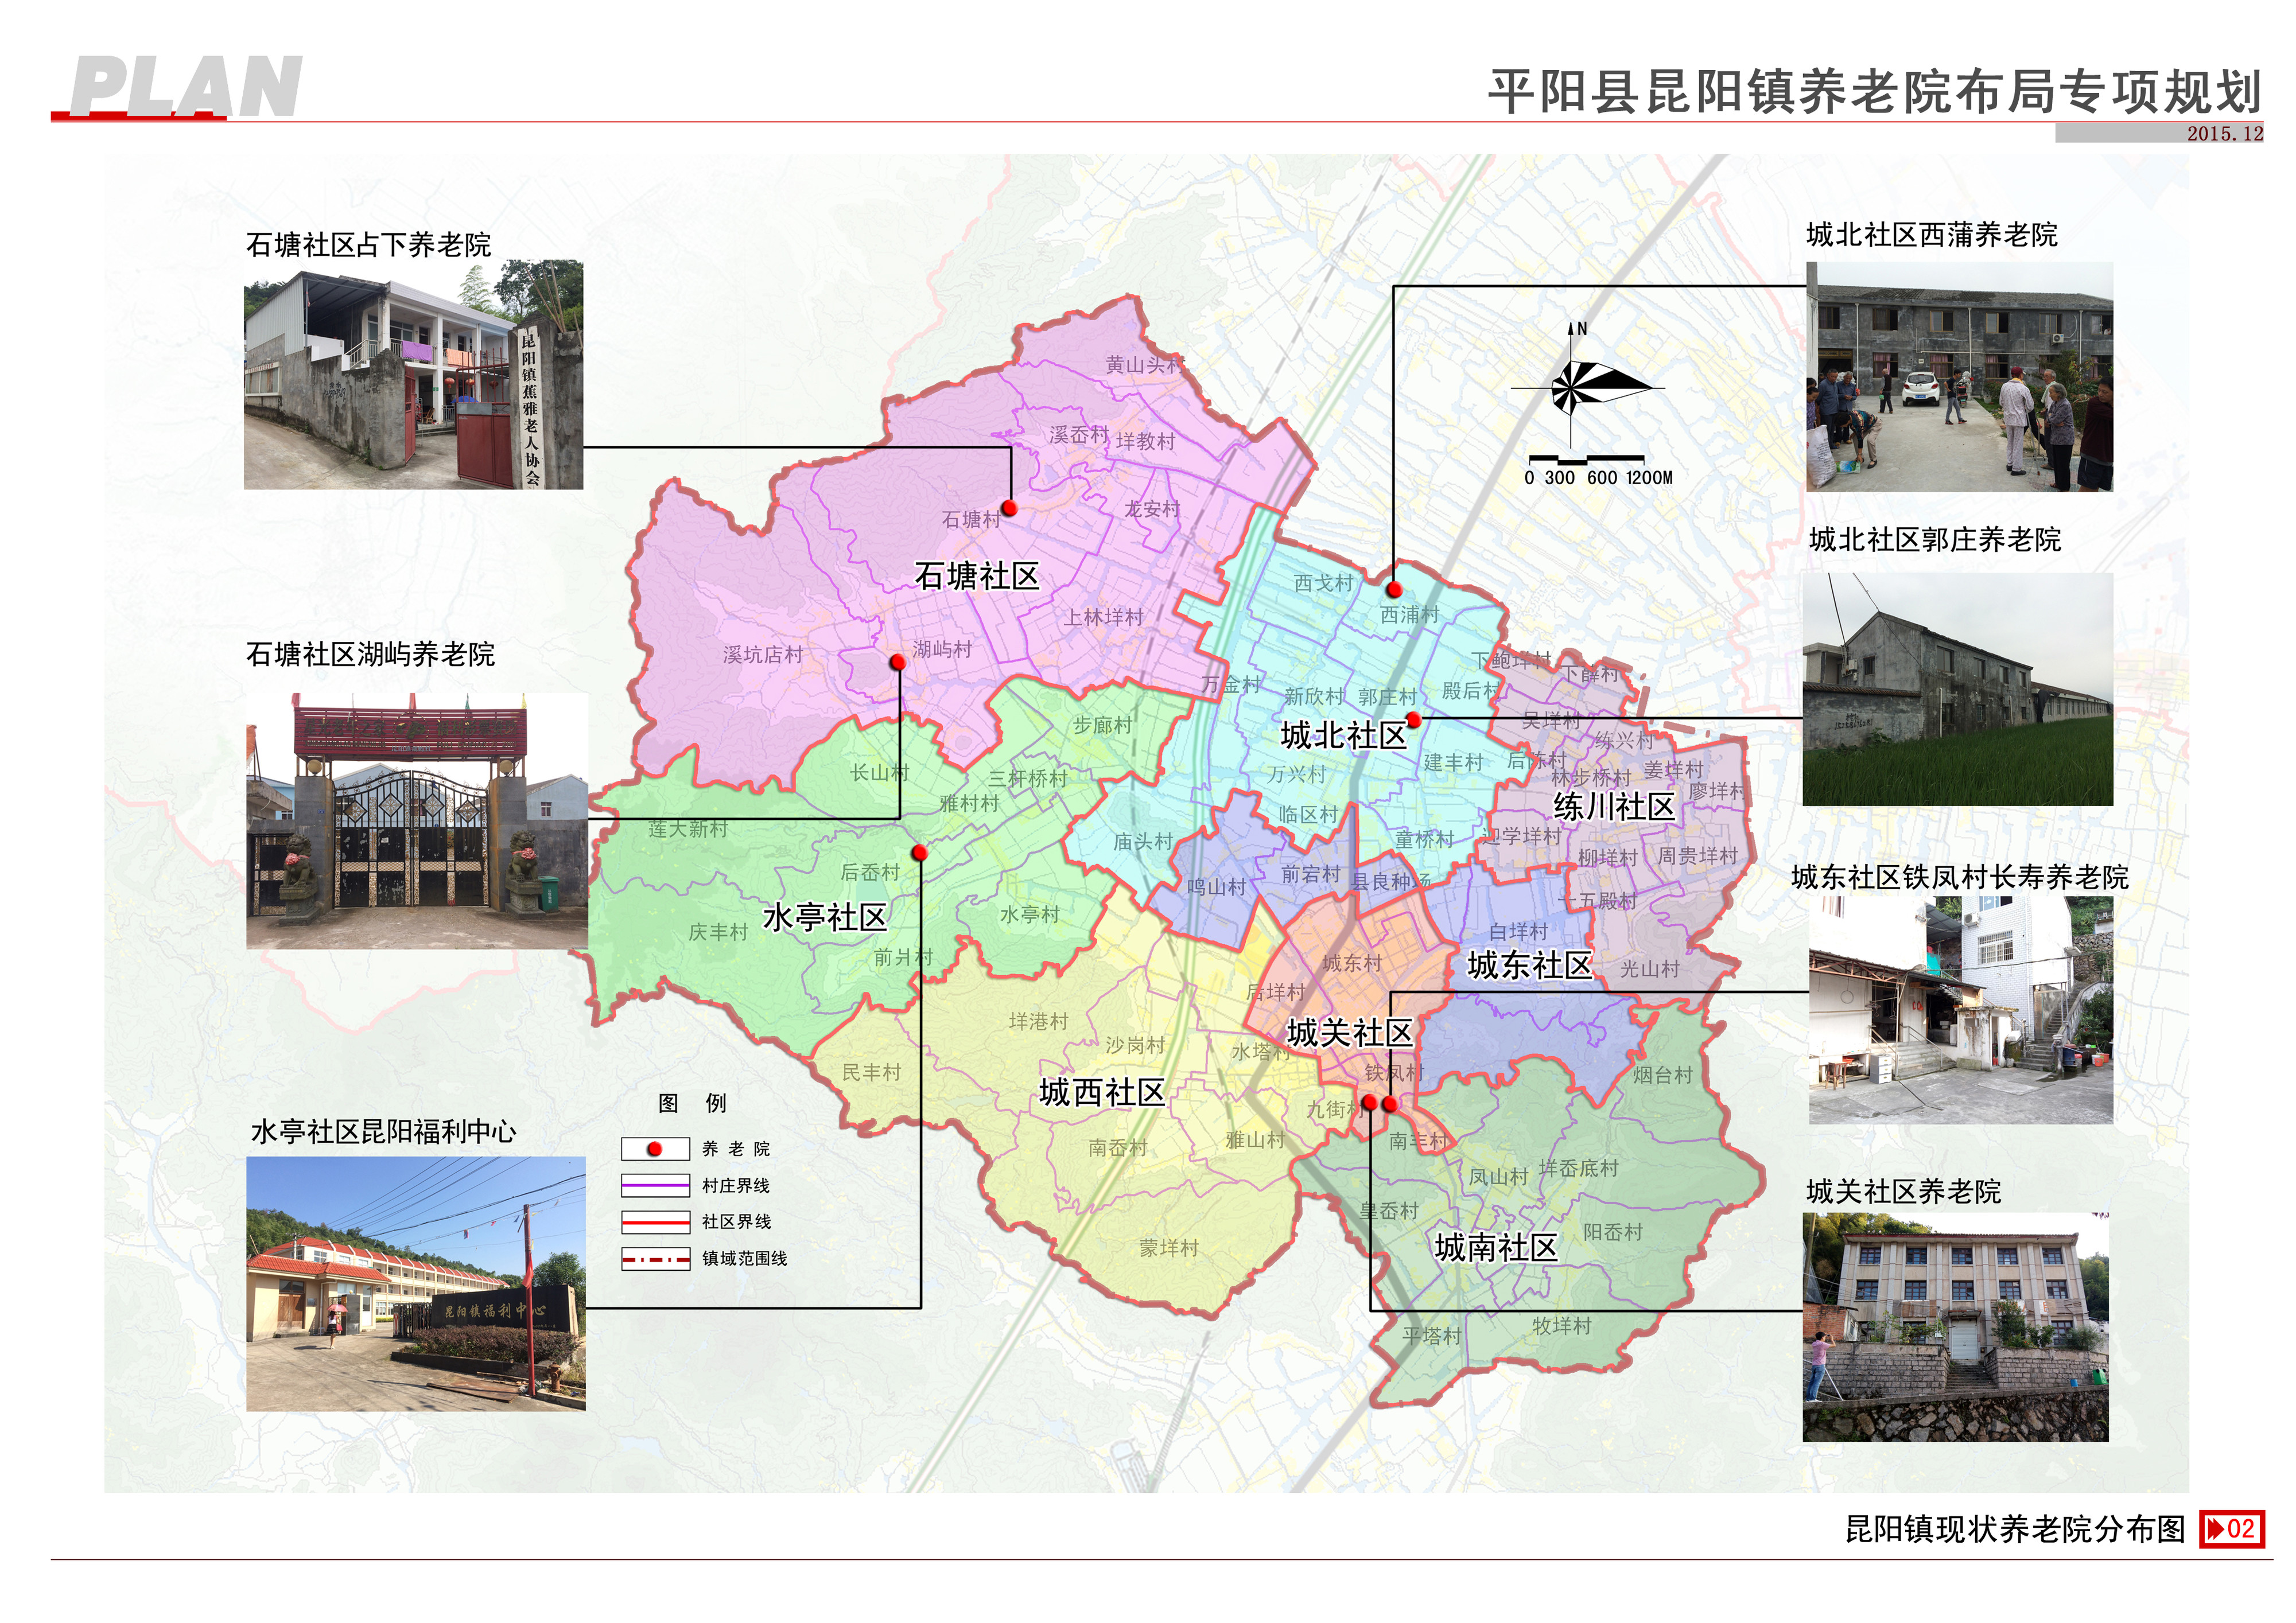 平阳县昆阳镇养老院布局专项规划草案公示